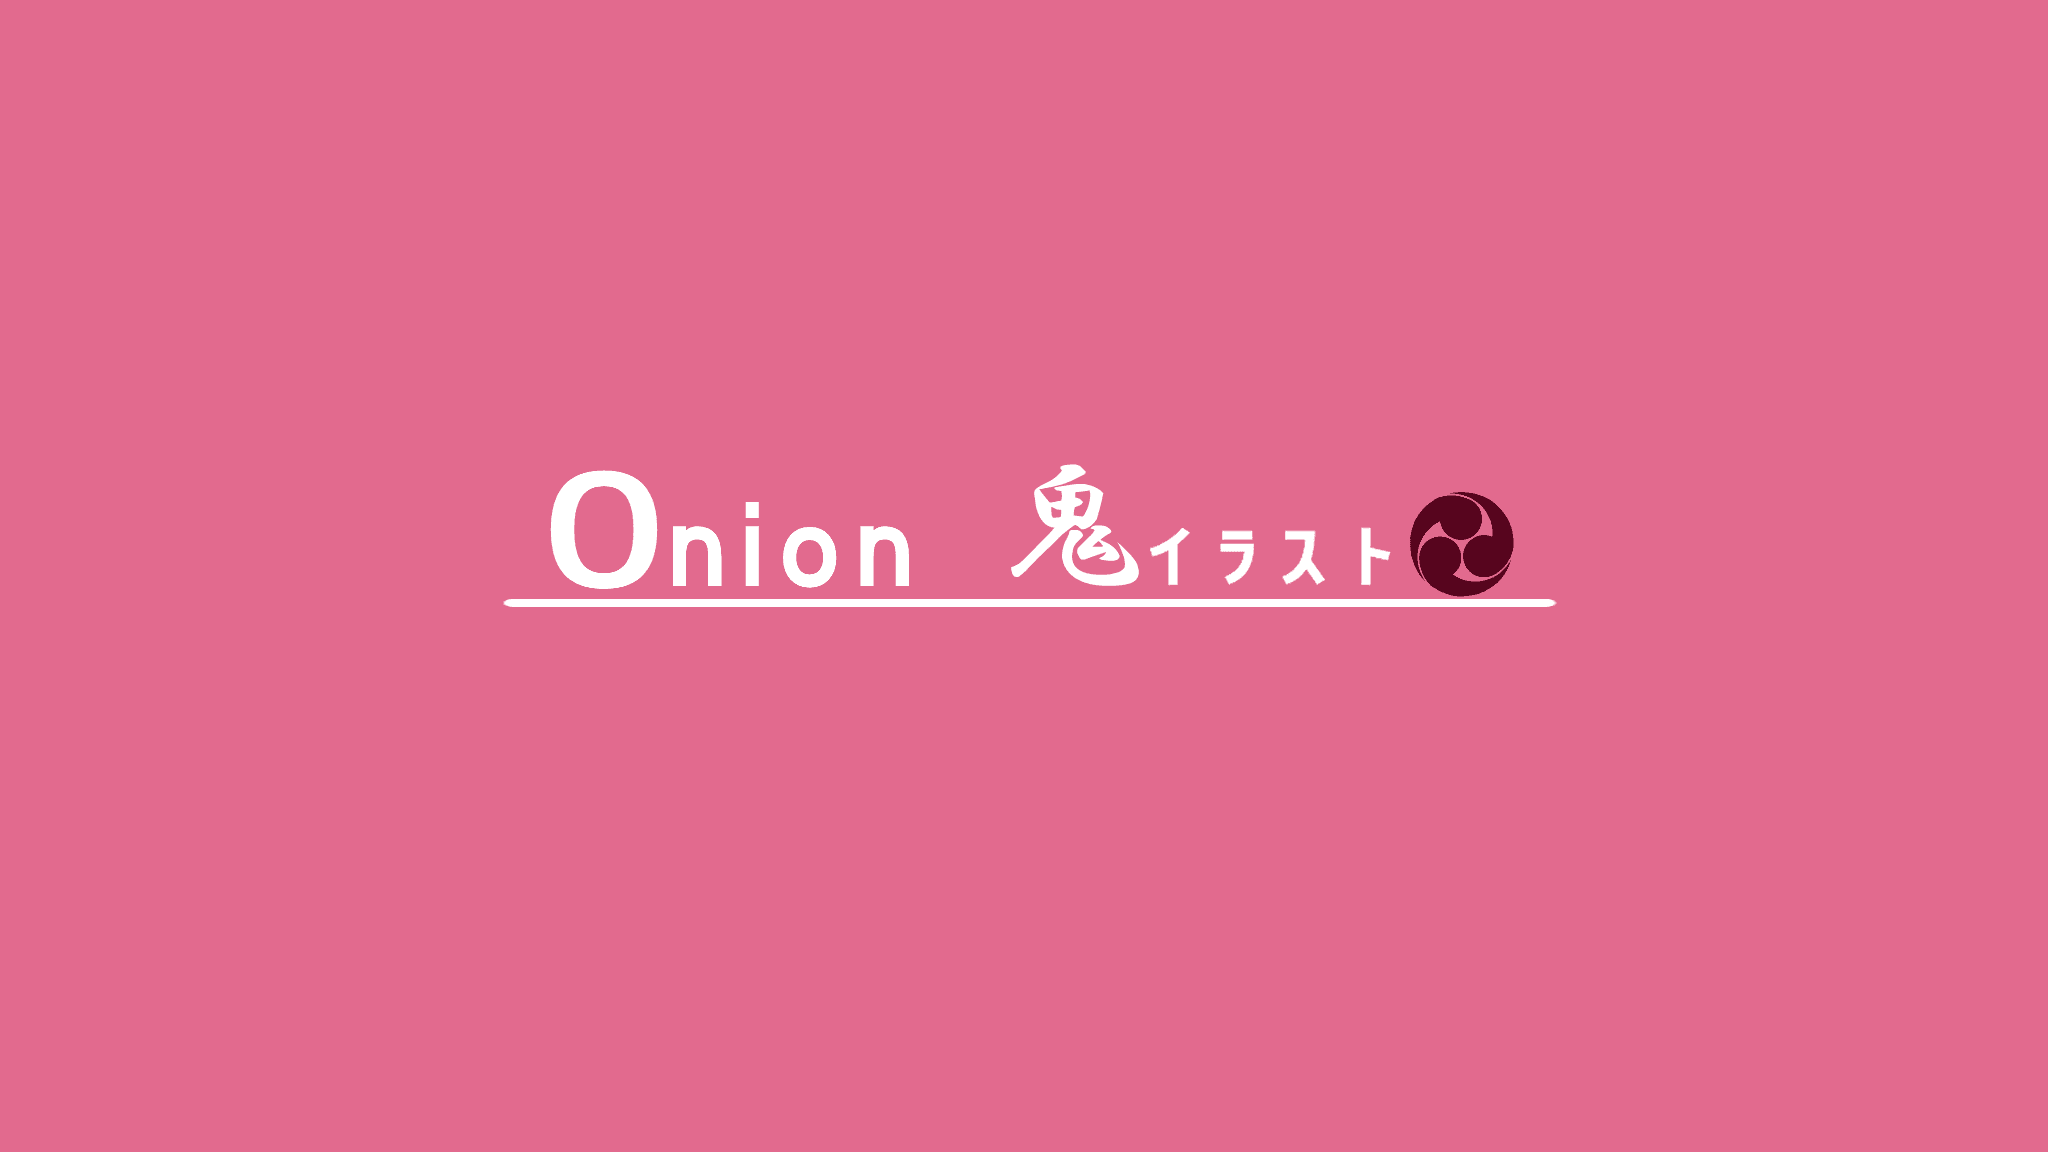 Onion_oni 橫幅